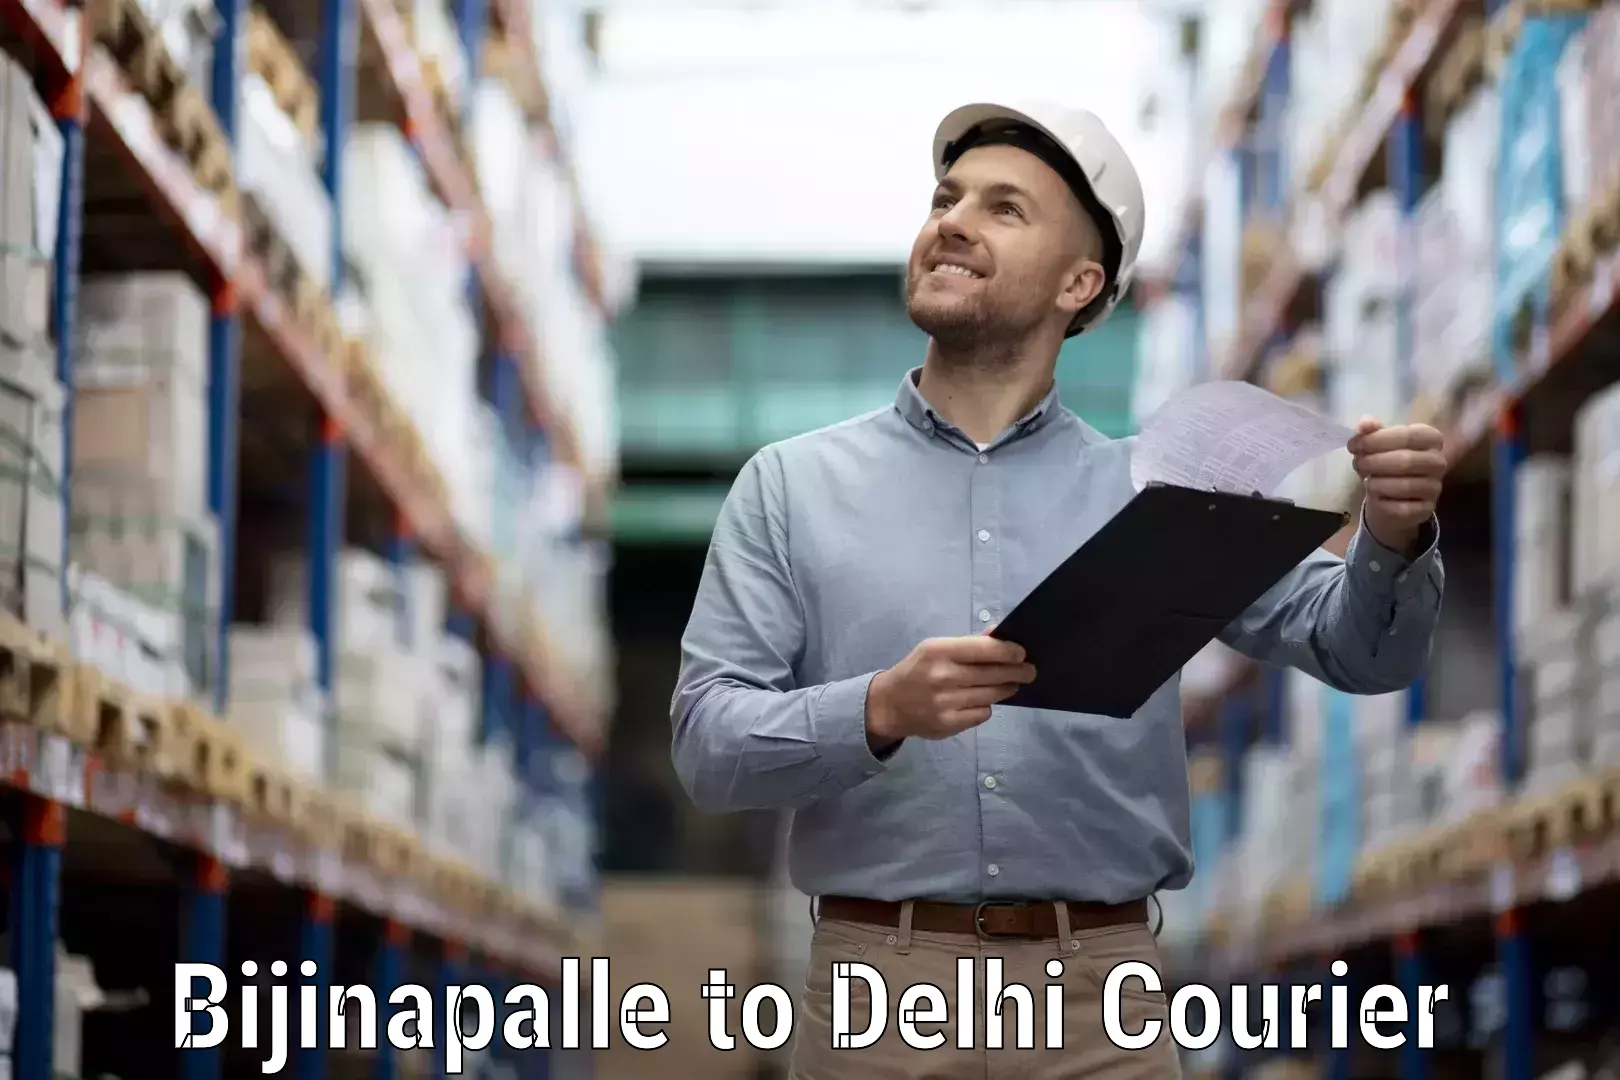 Next-generation courier services Bijinapalle to Ramesh Nagar